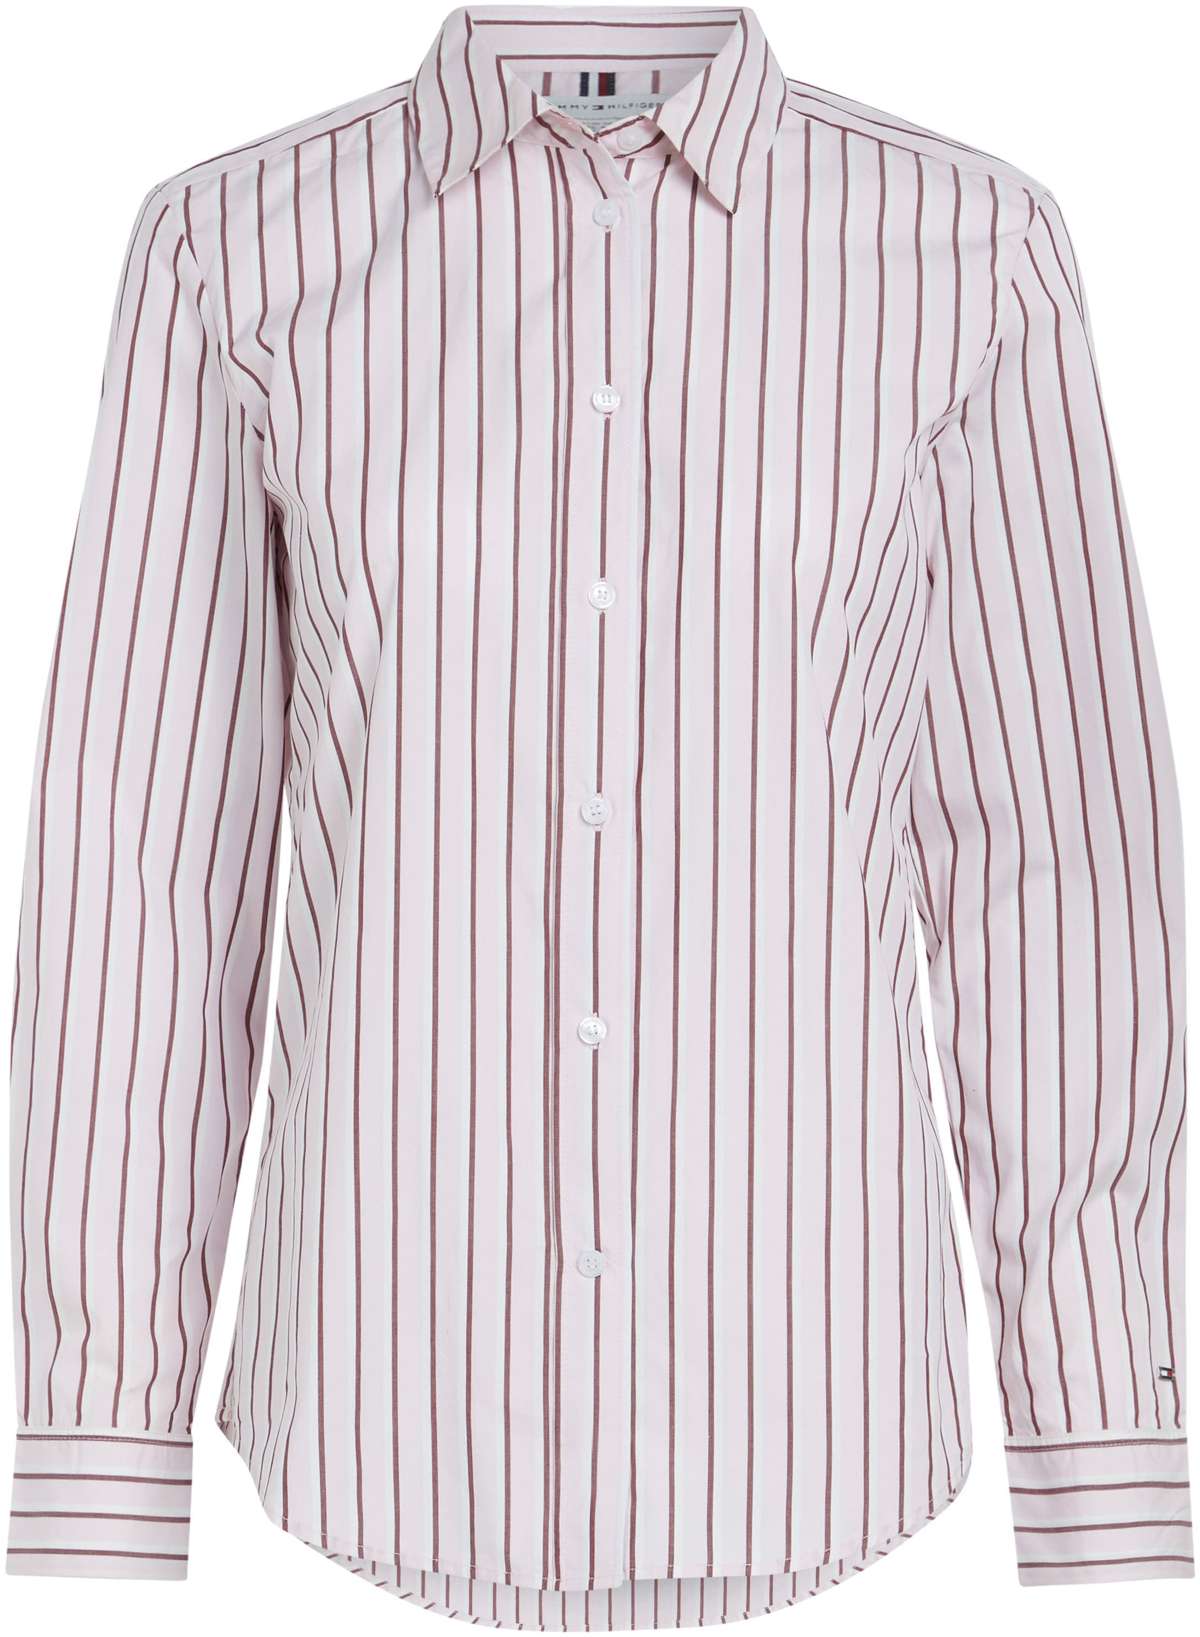 Блуза-рубашка модного полосатого дизайна